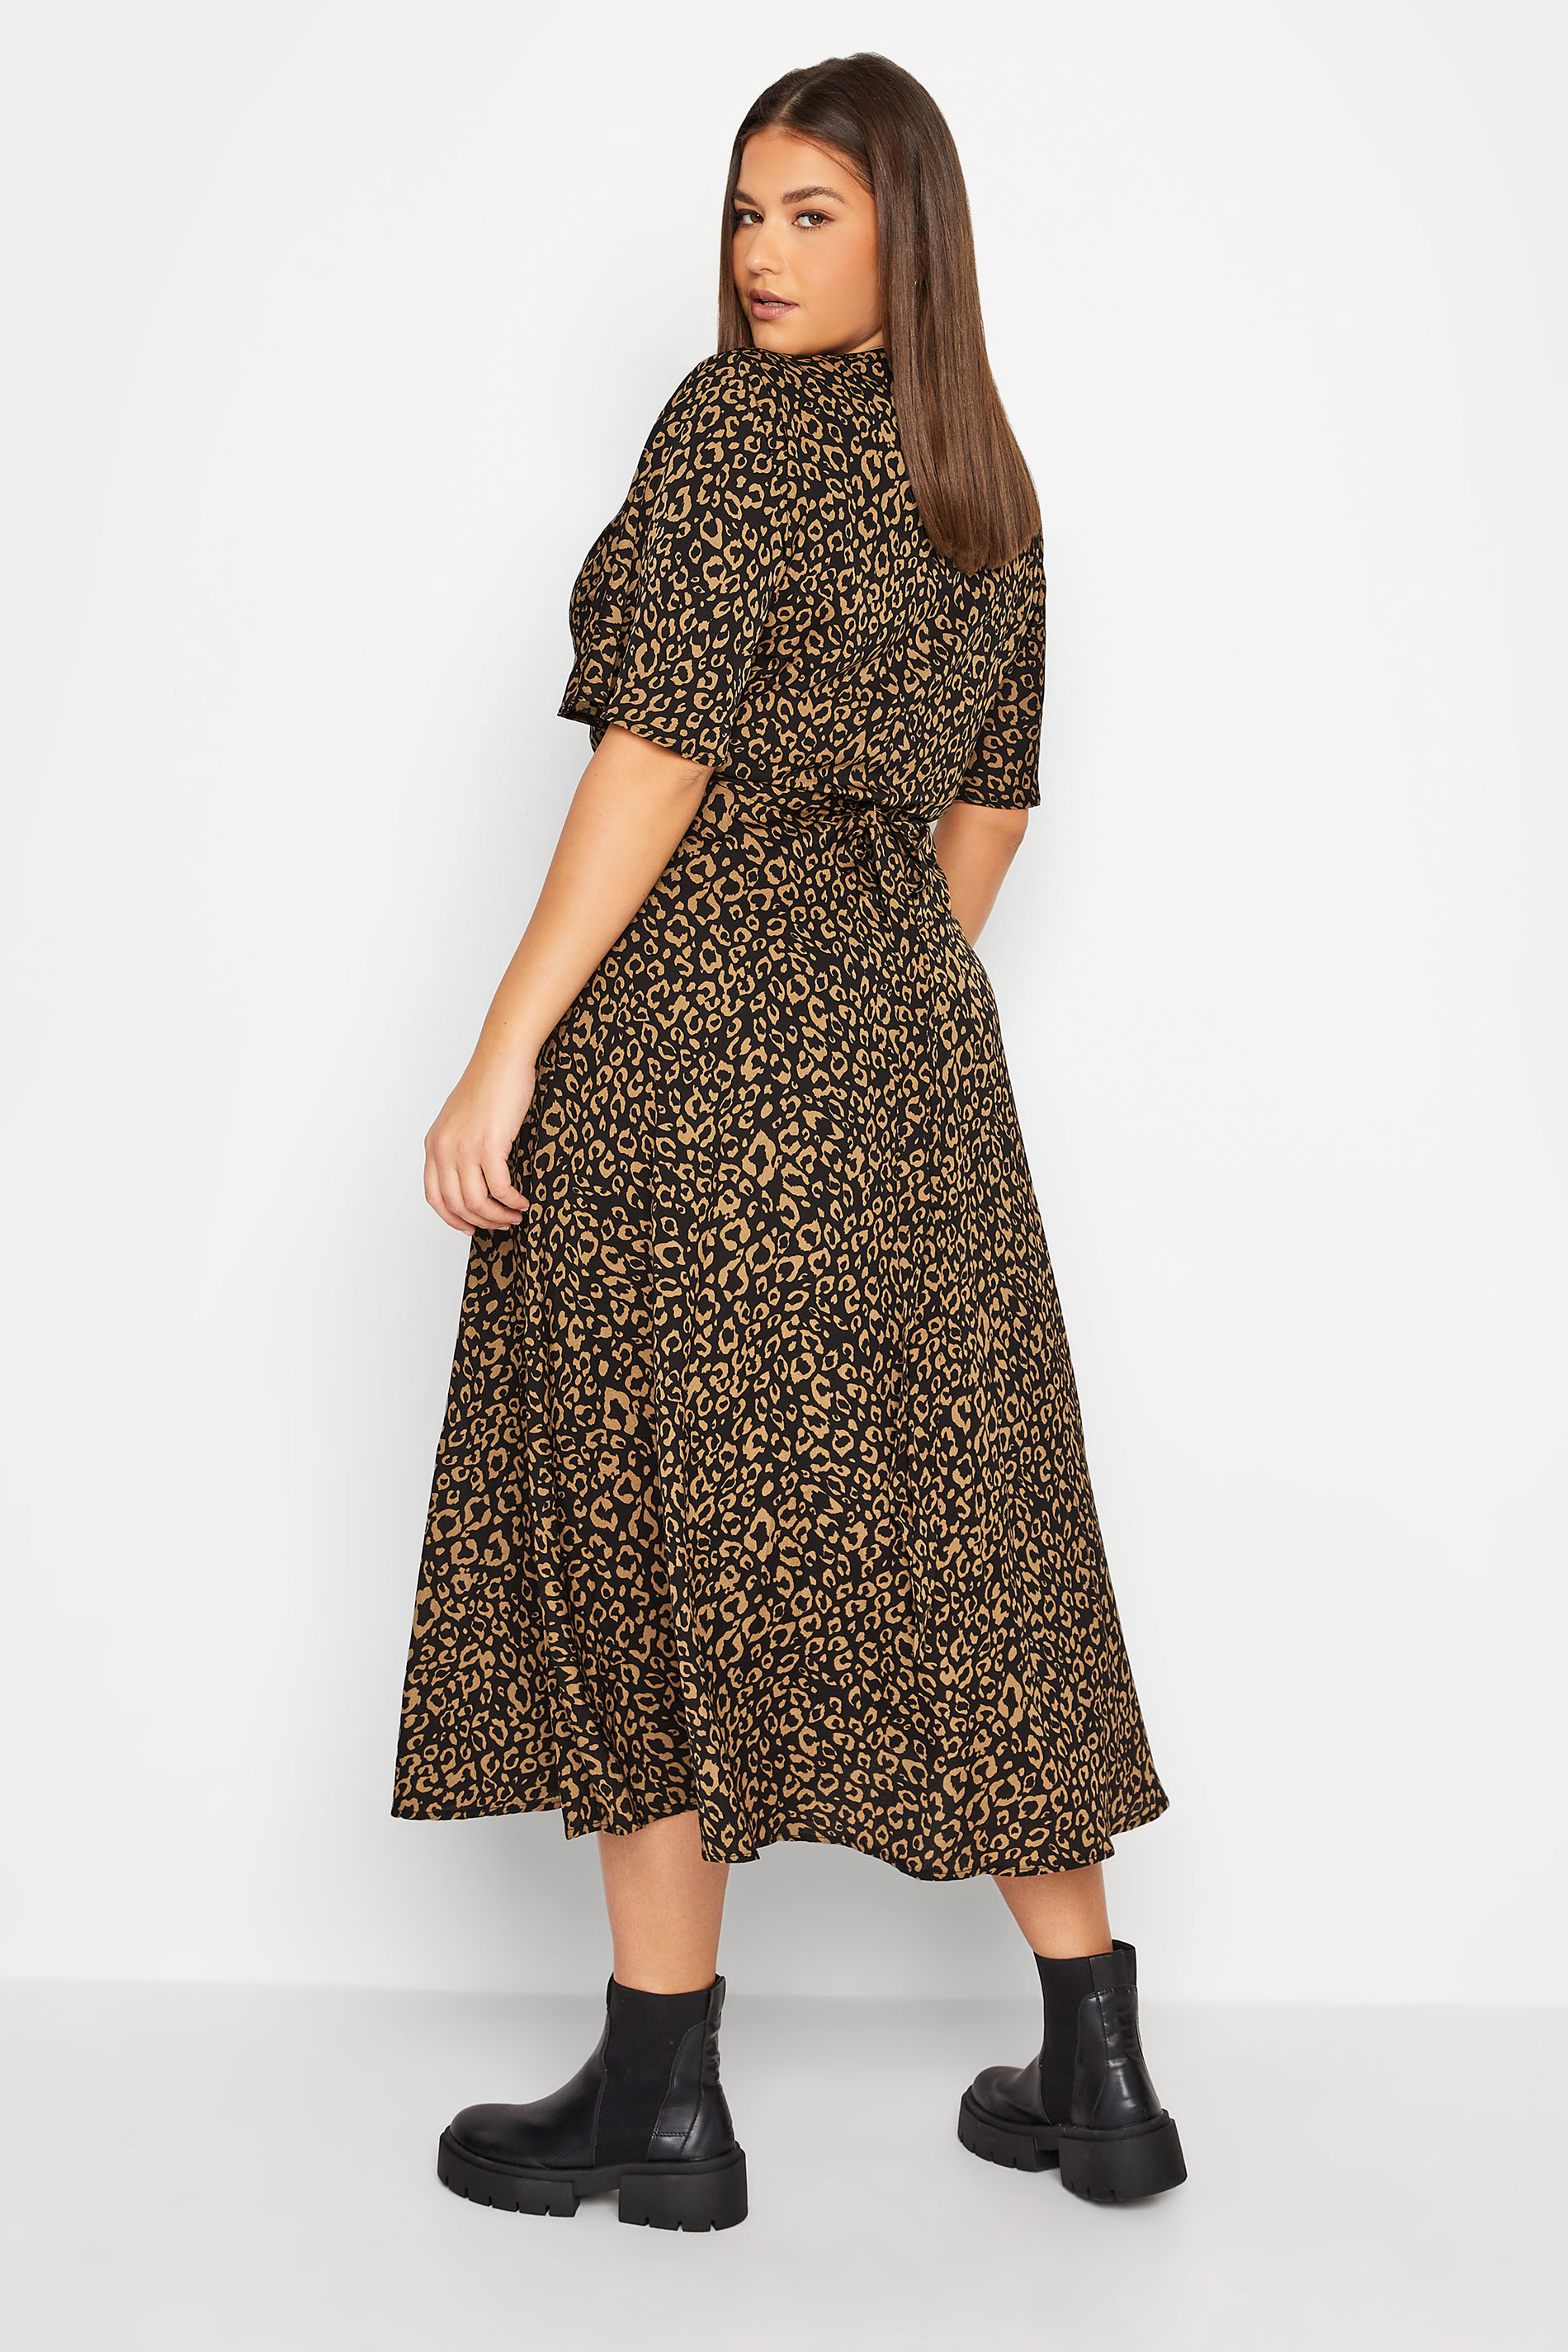 LTS Tall Women's Black Leopard Print Midaxi Wrap Dress | Long Tall Sally 3